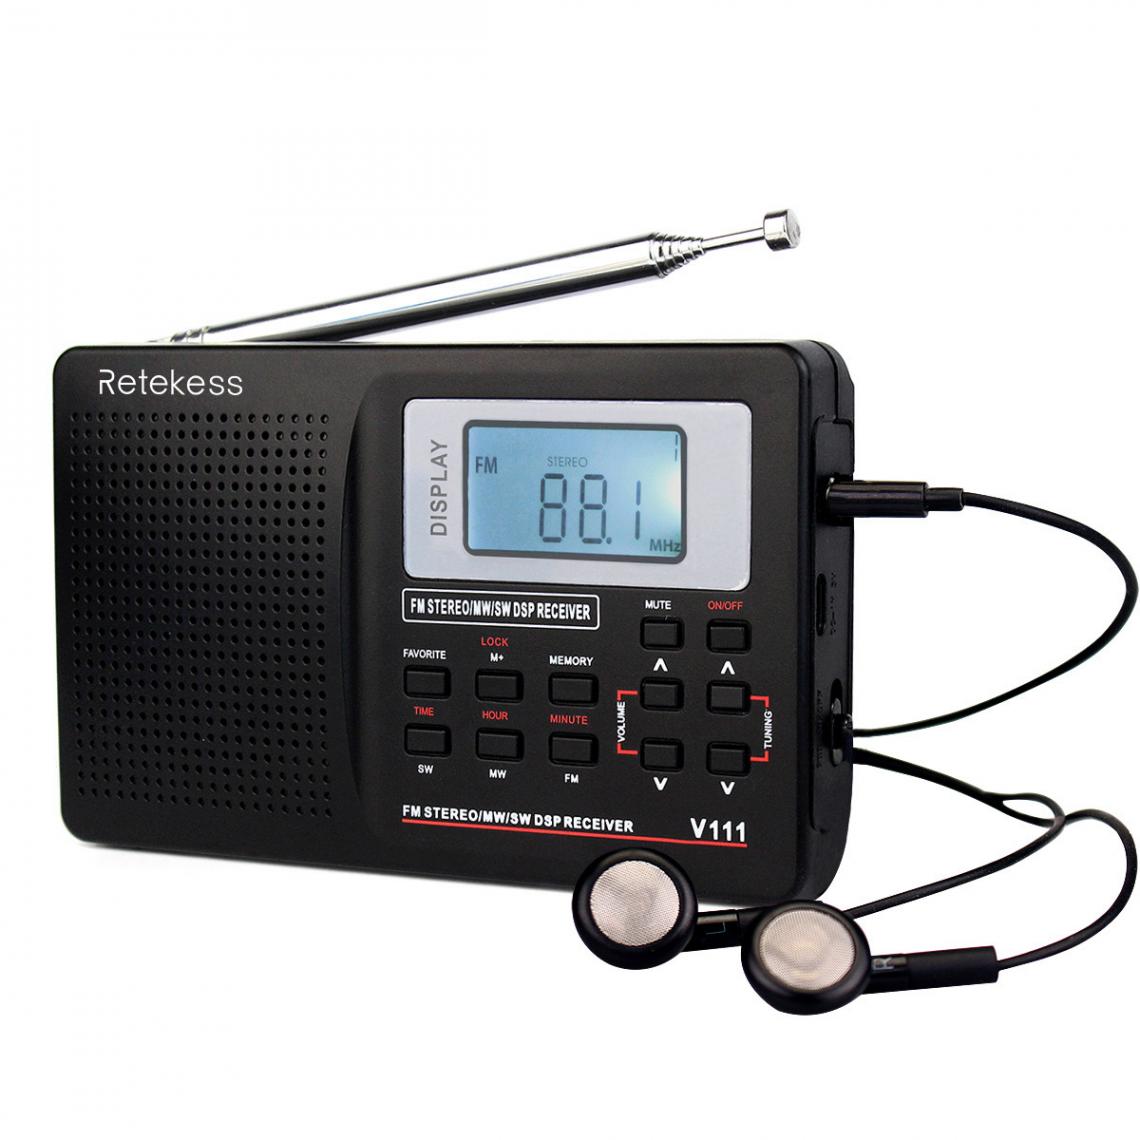 Universal - Radio FM stéréo/ondes moyennes/ondes courtes DSP World Band récepteur avec alarme chronologique radio portable noir | avec récepteur | radio FM stéréo(Le noir) - Radio